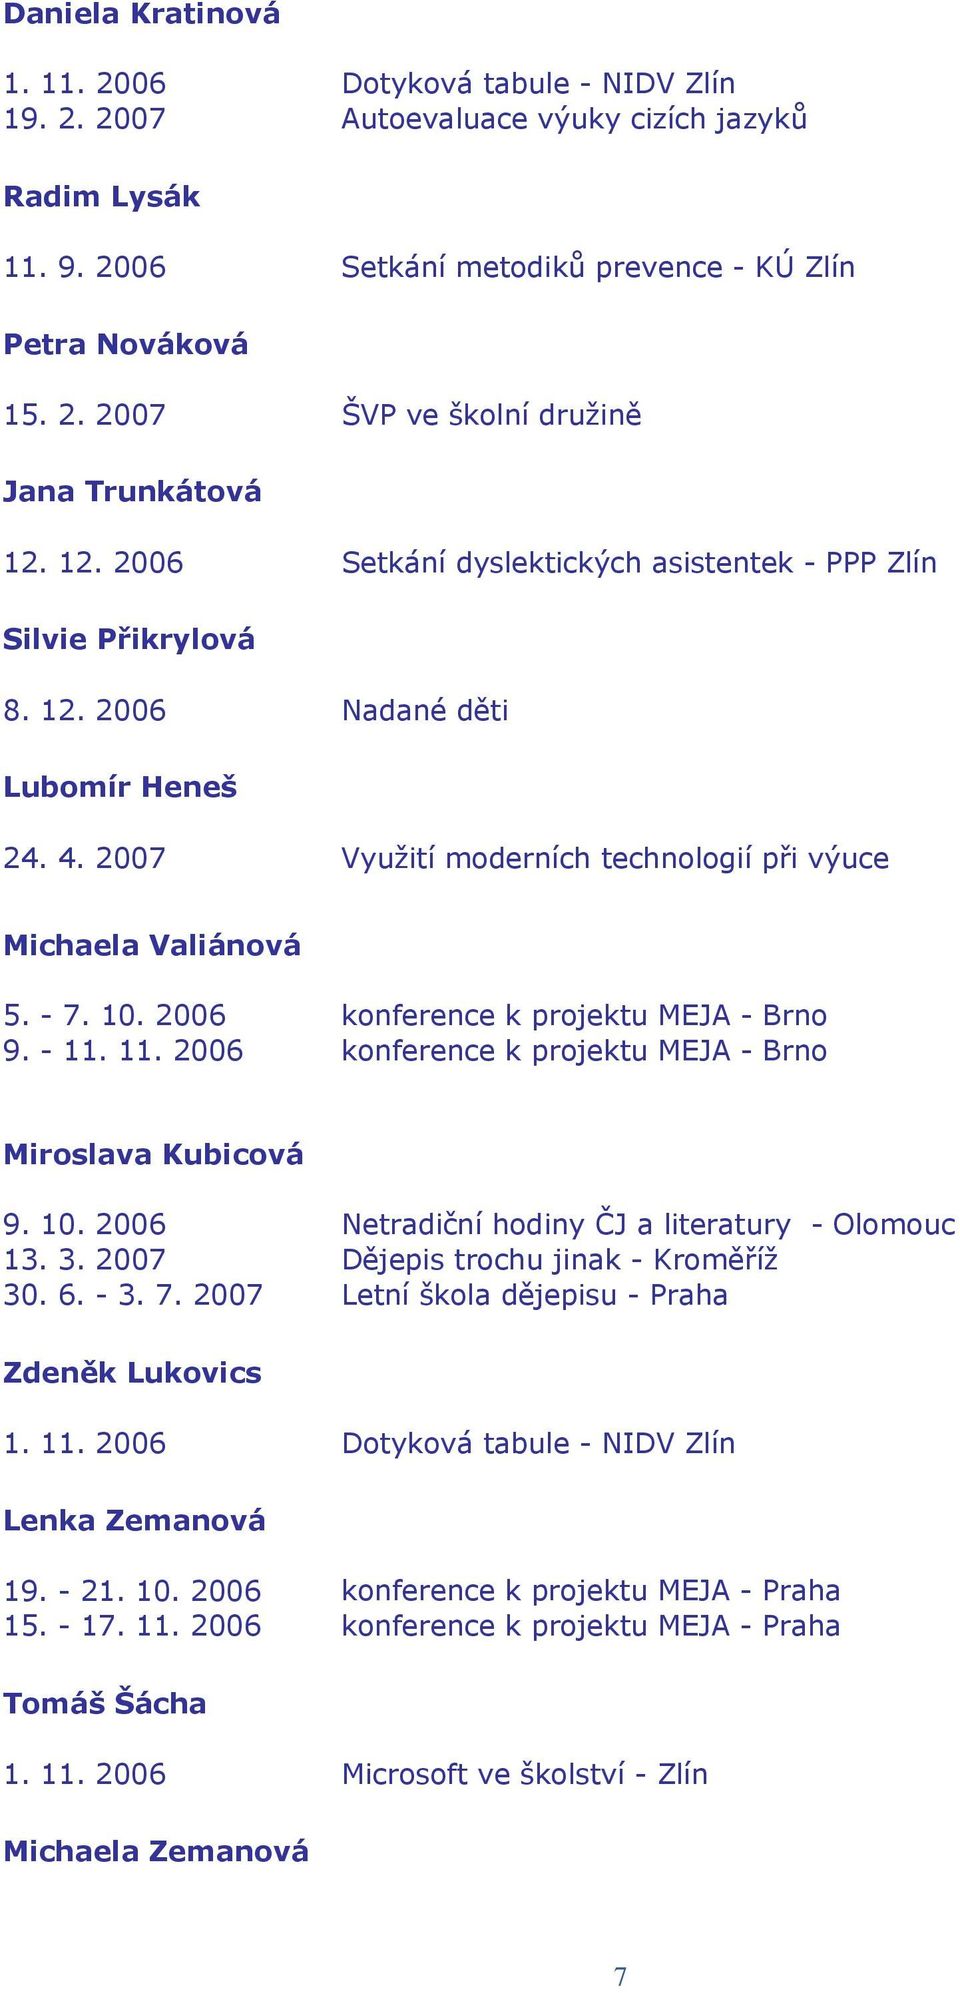 2006 konference k projektu MEJA - Brno 9. - 11. 11. 2006 konference k projektu MEJA - Brno Miroslava Kubicová 9. 10. 2006 Netradiční hodiny ČJ a literatury - Olomouc 13. 3.